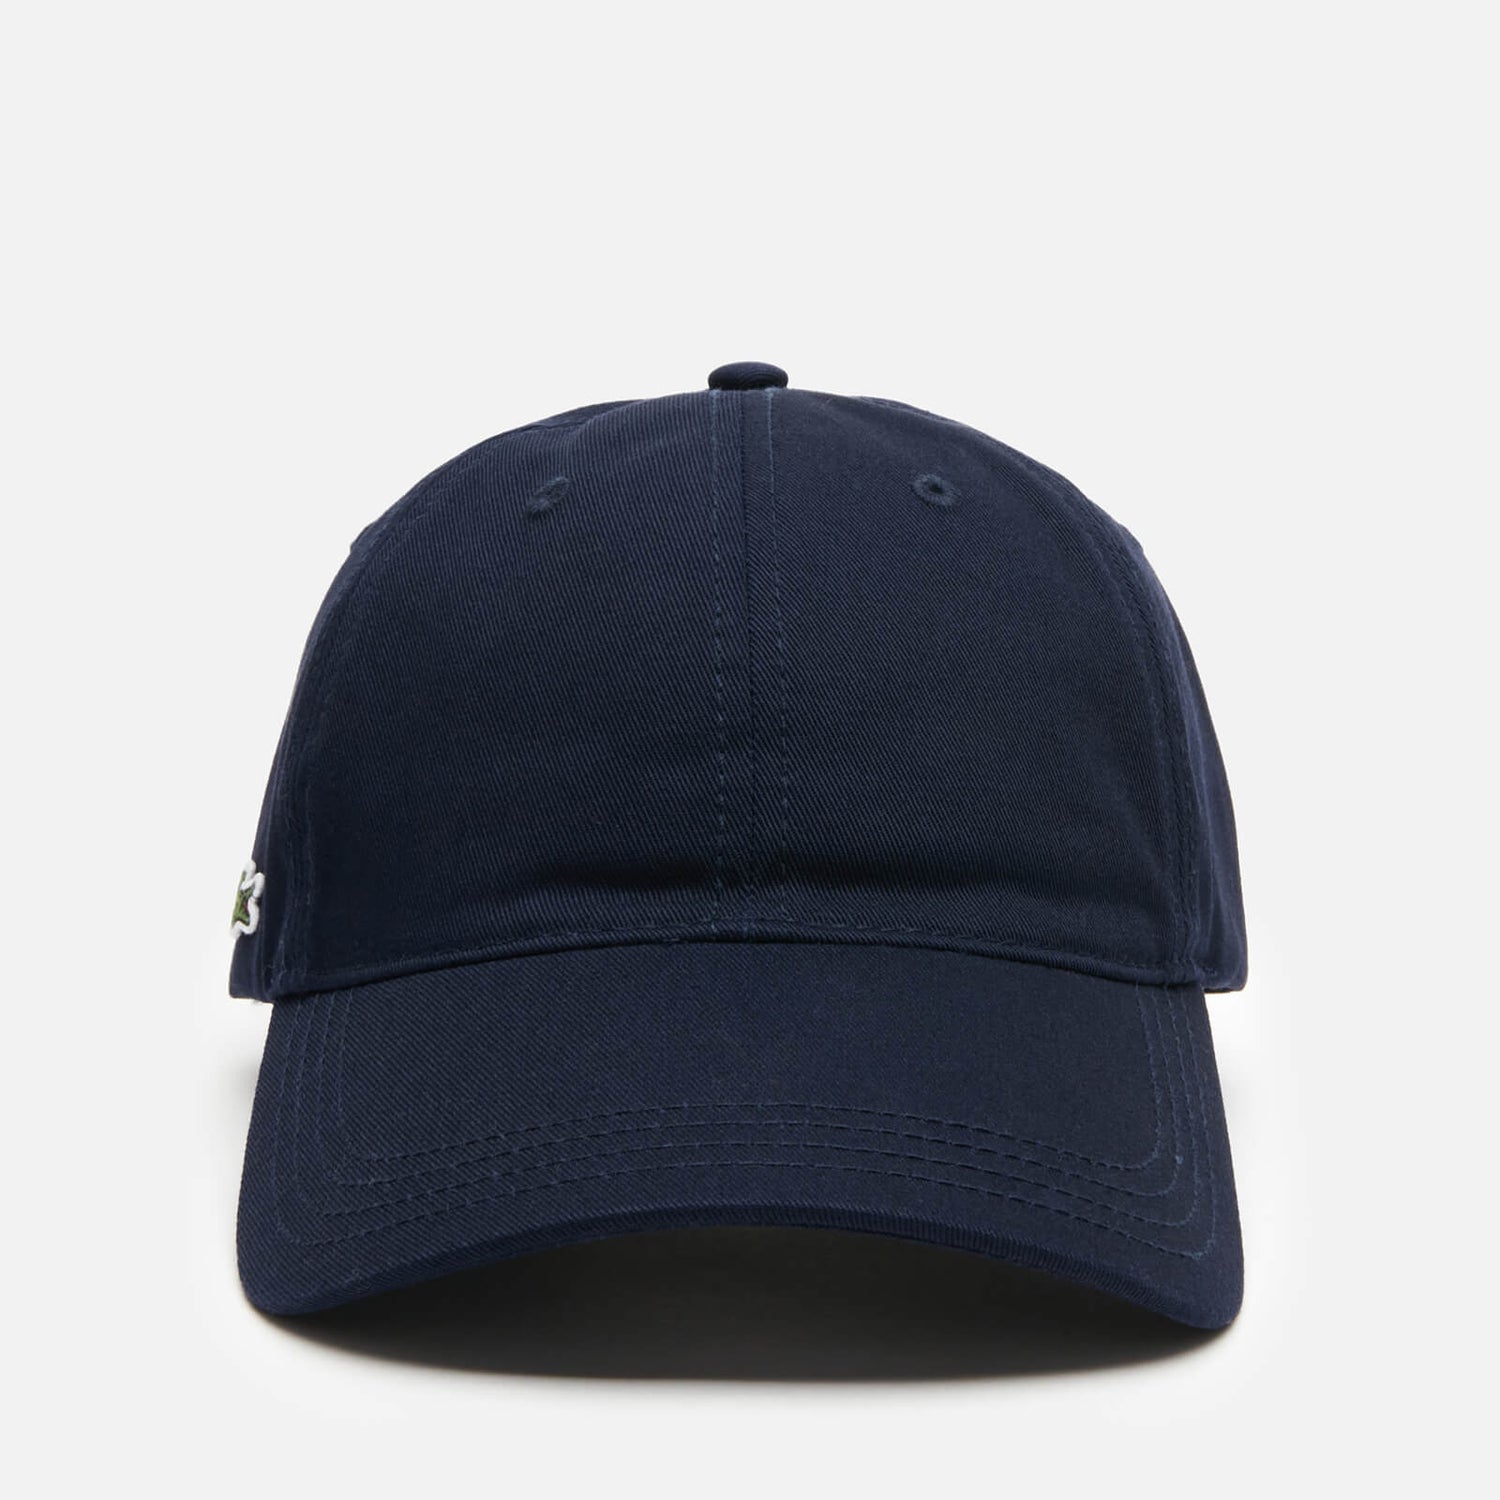 Lacoste Men's Contrast Strap Cotton Cap - Navy Blue